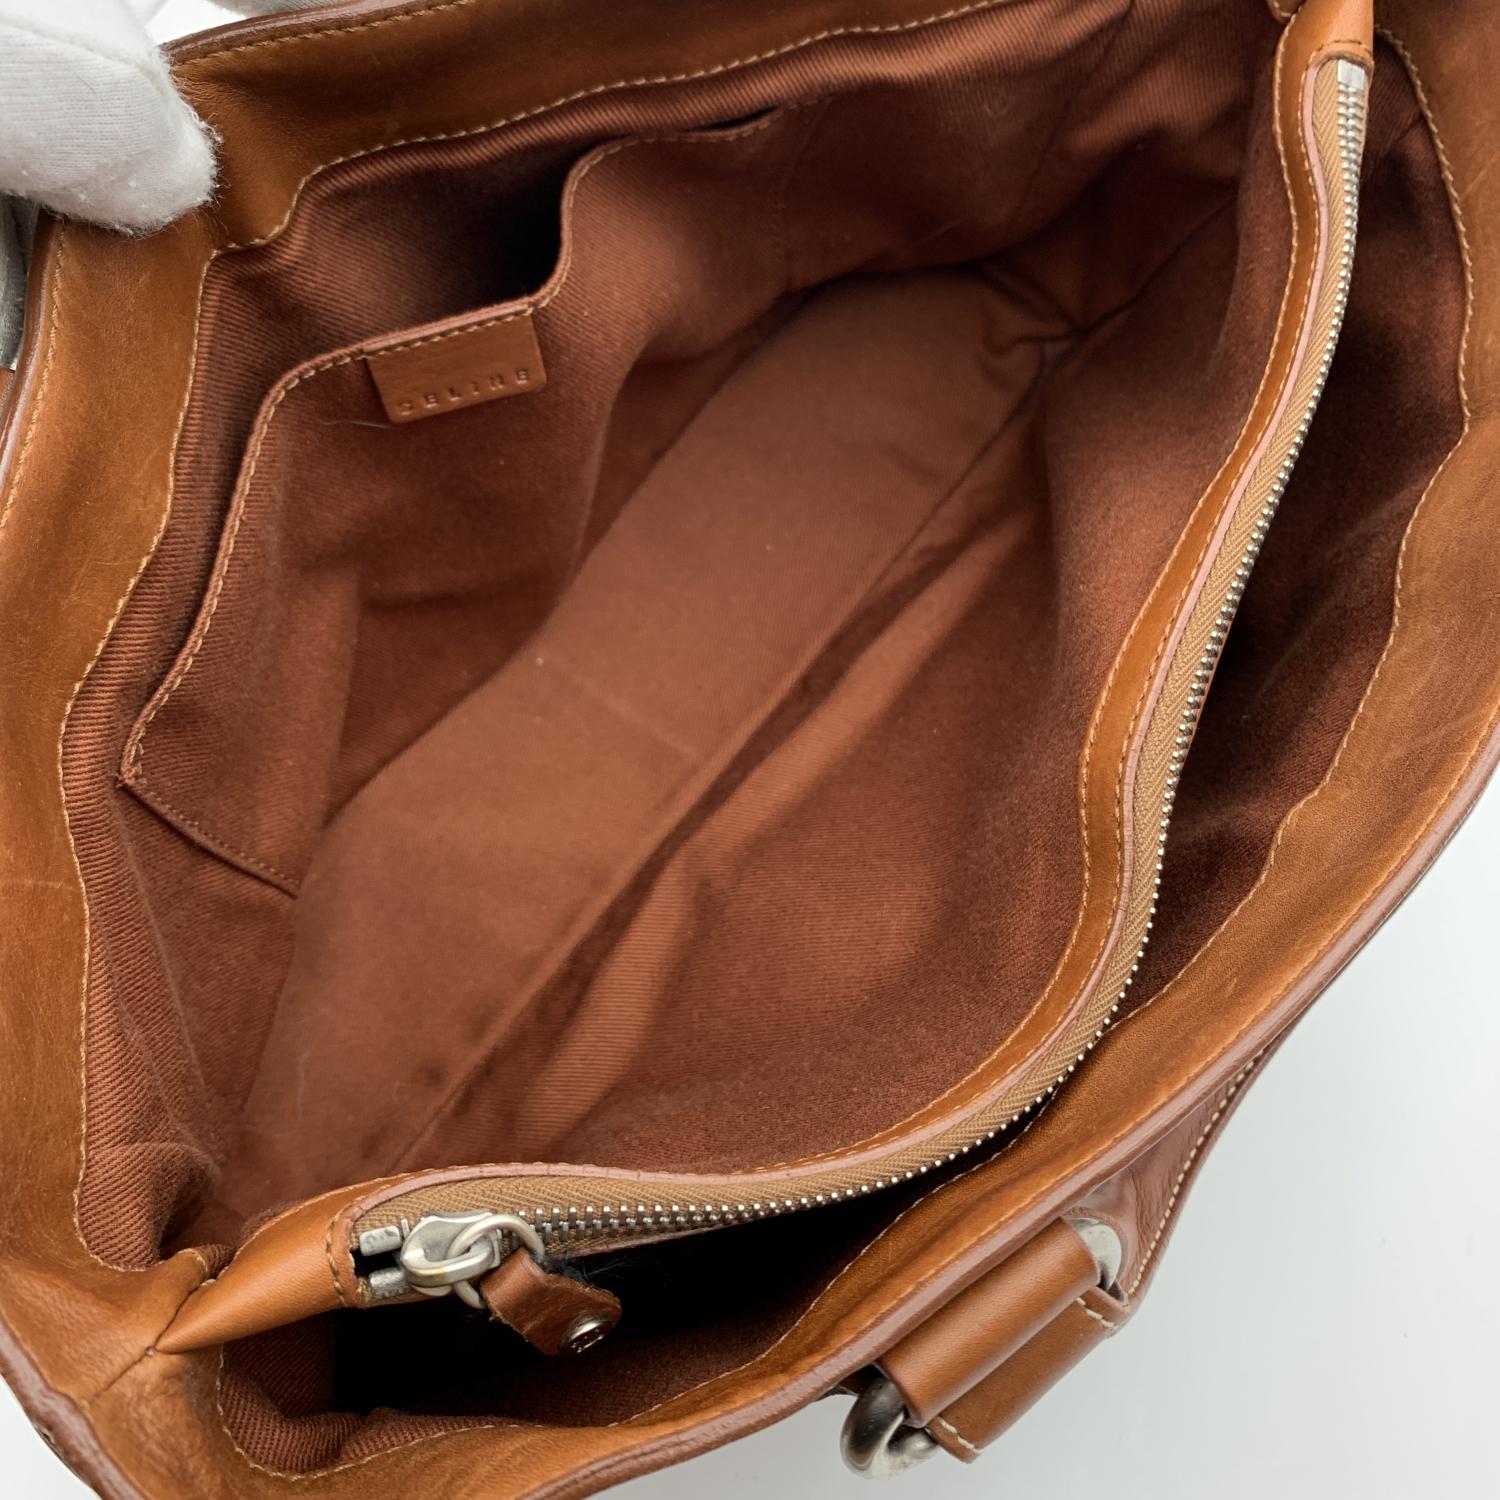 Celine Light Brown Leather Boogie Bag Satchel Tote Handbag 1